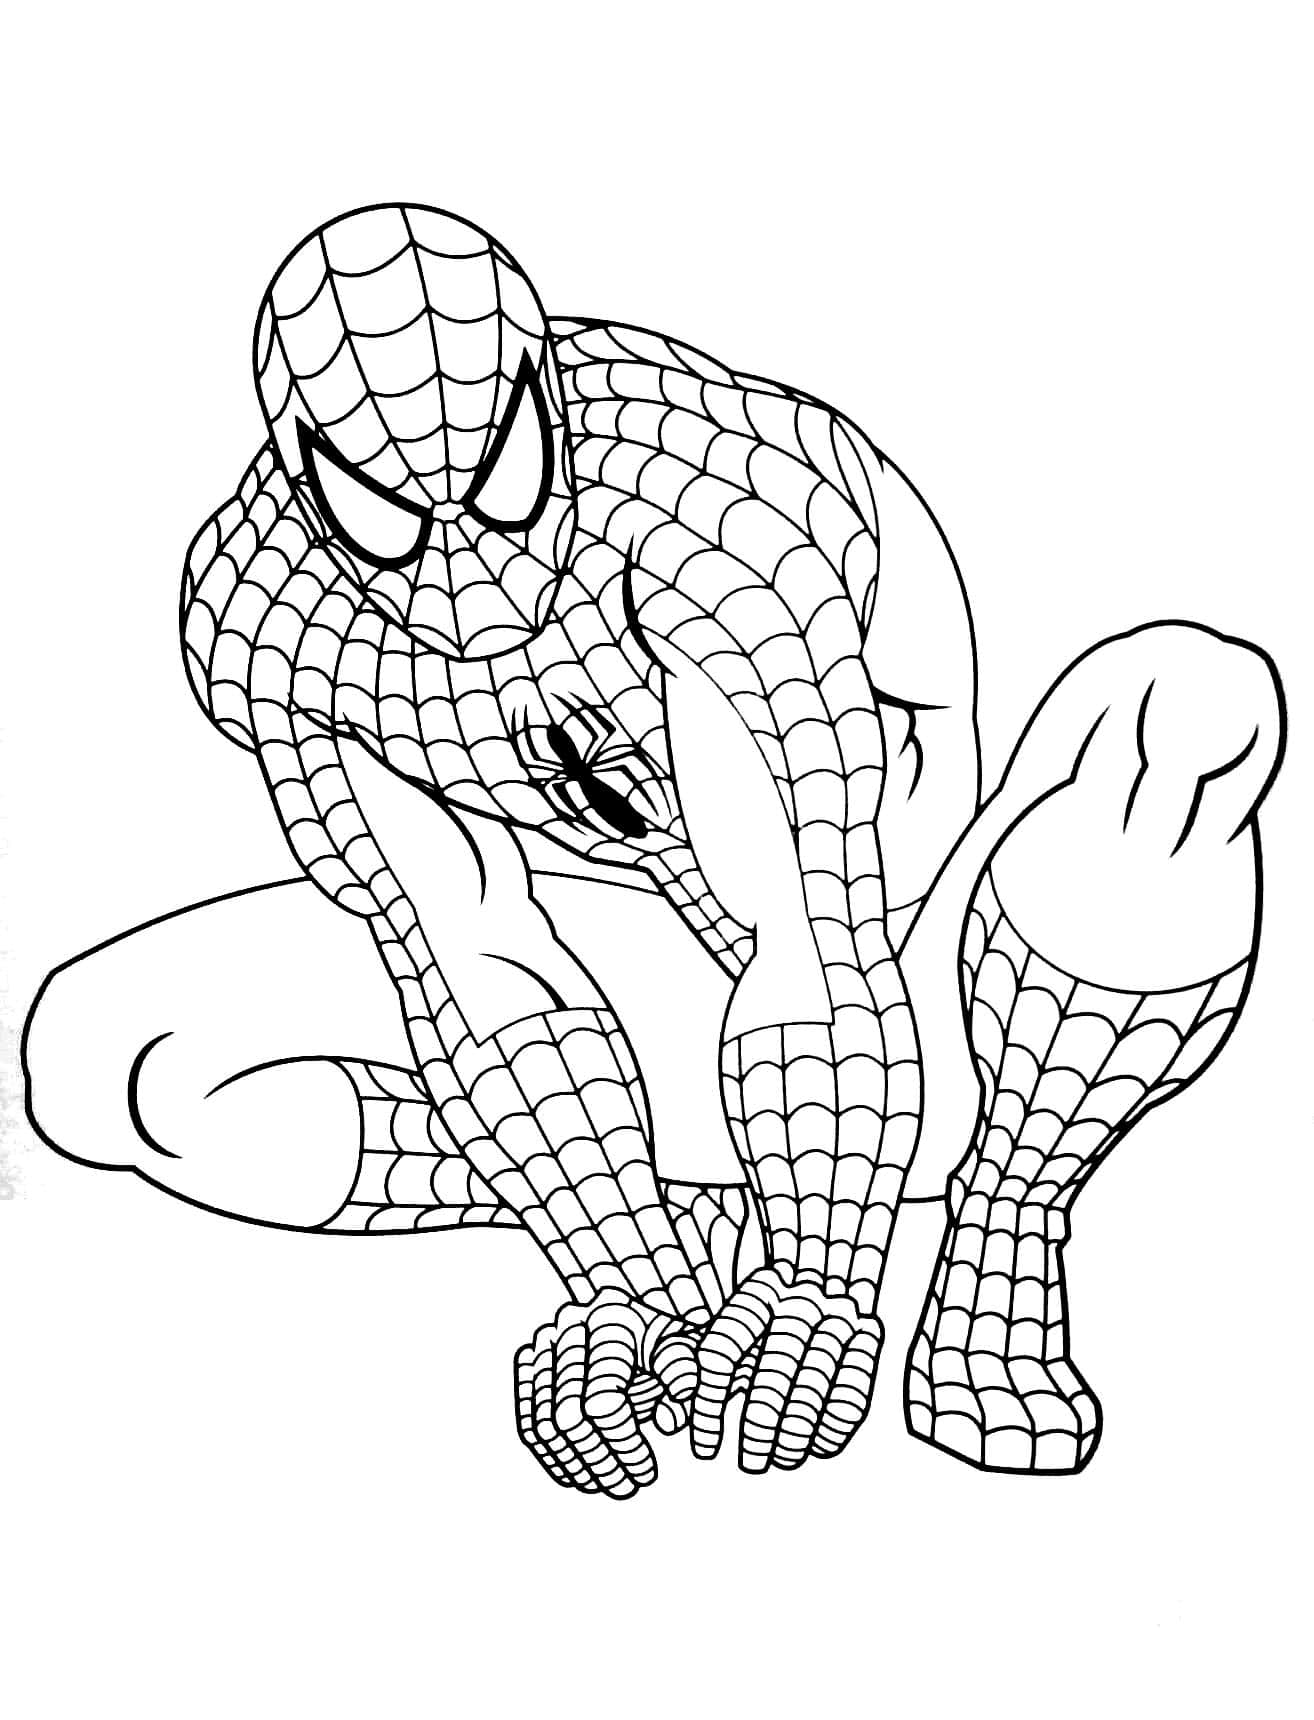 Résultat de recherche d'images pour coloriage spiderman